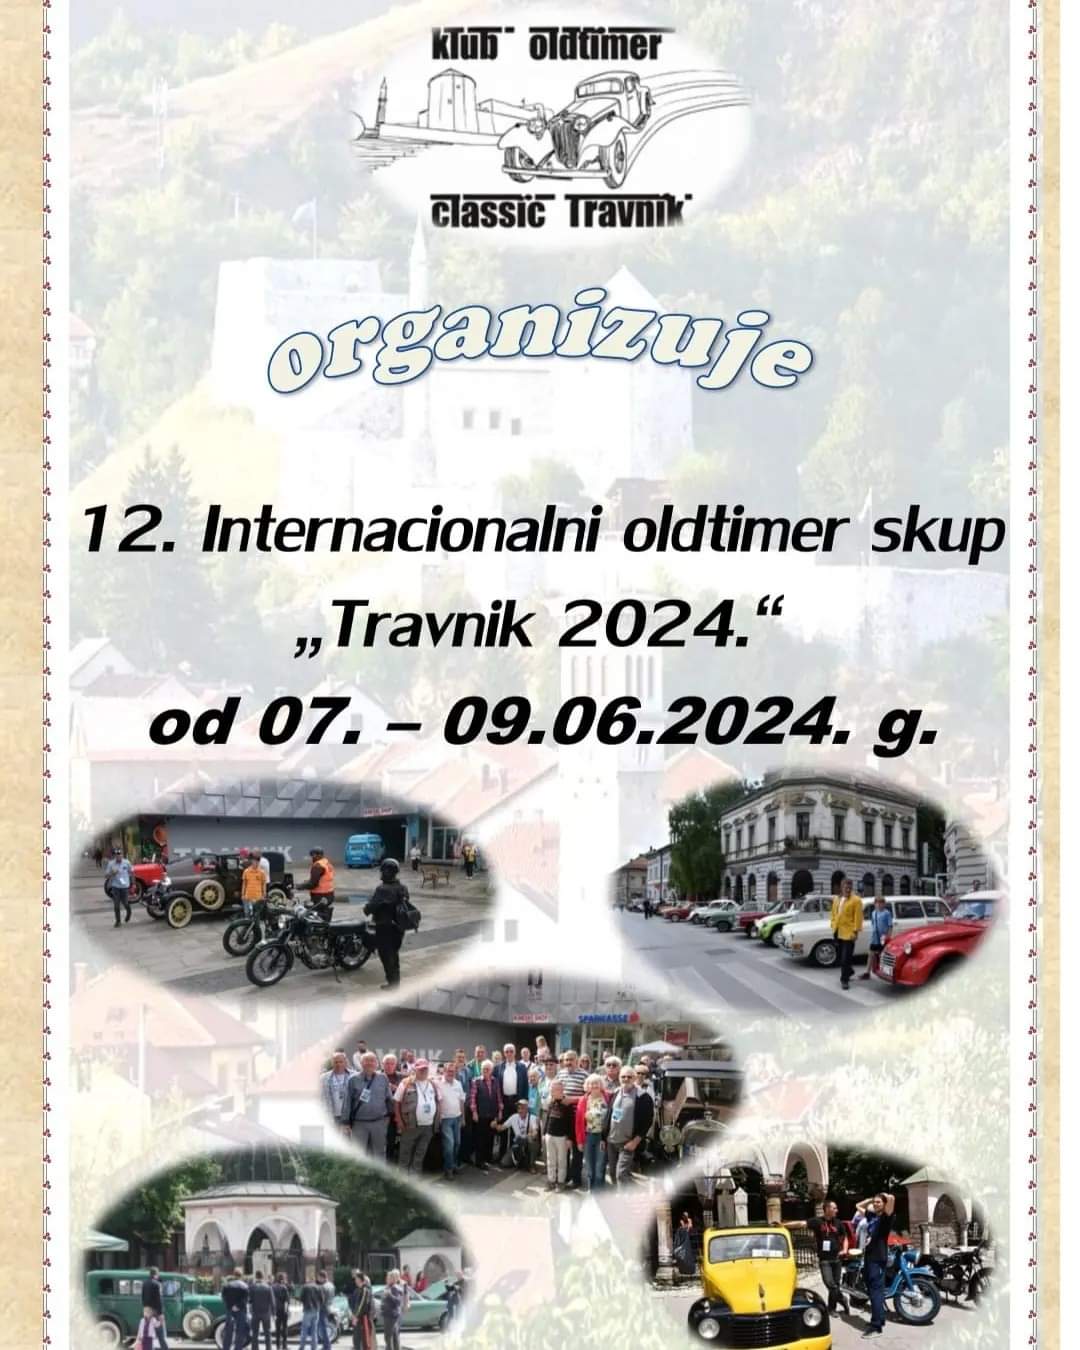 Uskoro 12. Internacionalni oldtimer skup ”Travnik 2024.”